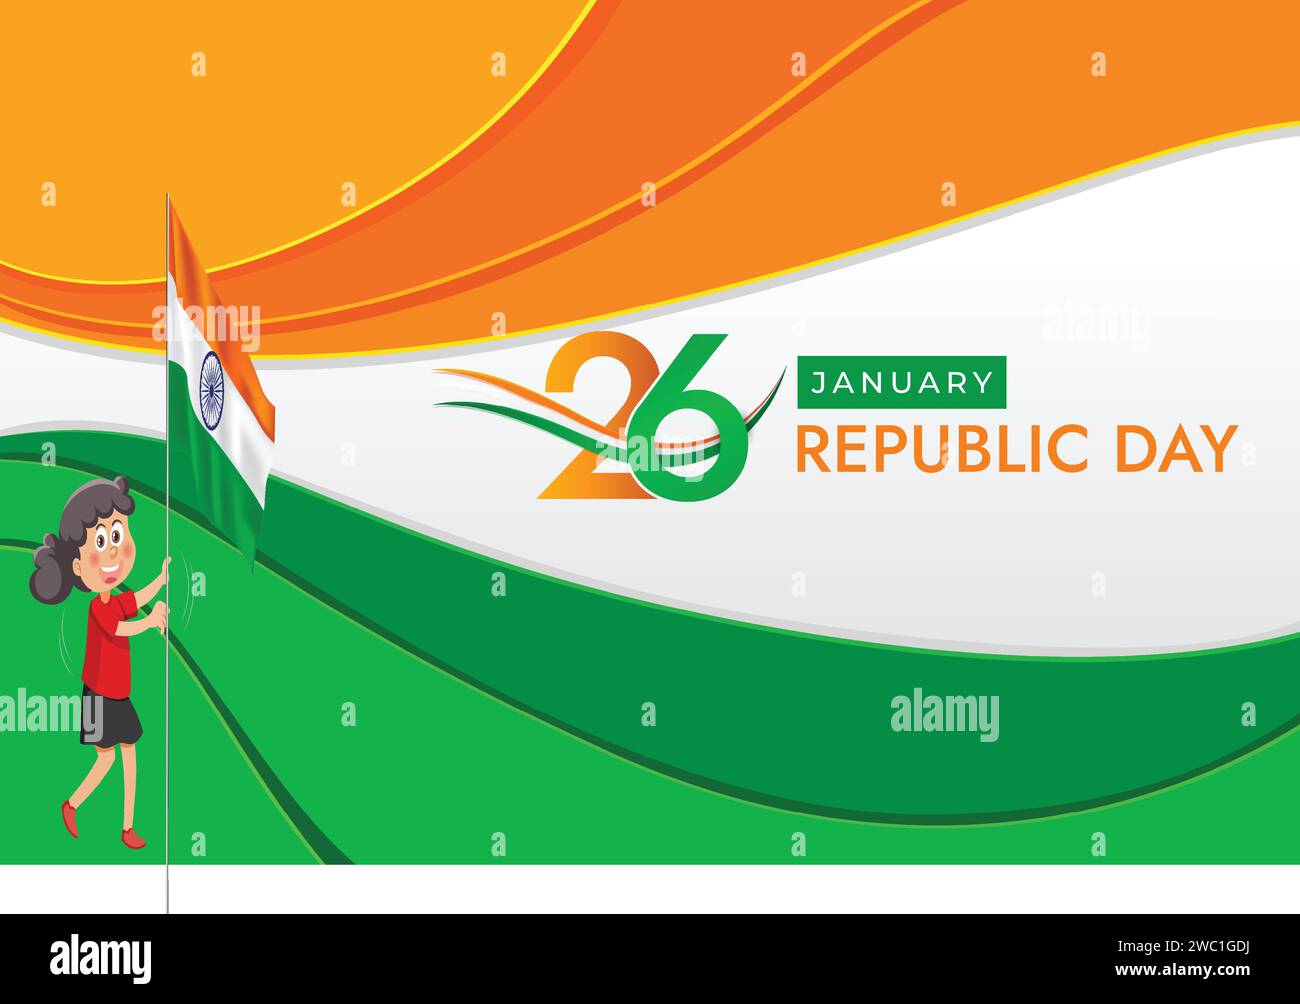 Indische republik Tag 26 Januar Vektor Illustration Stock Vektor